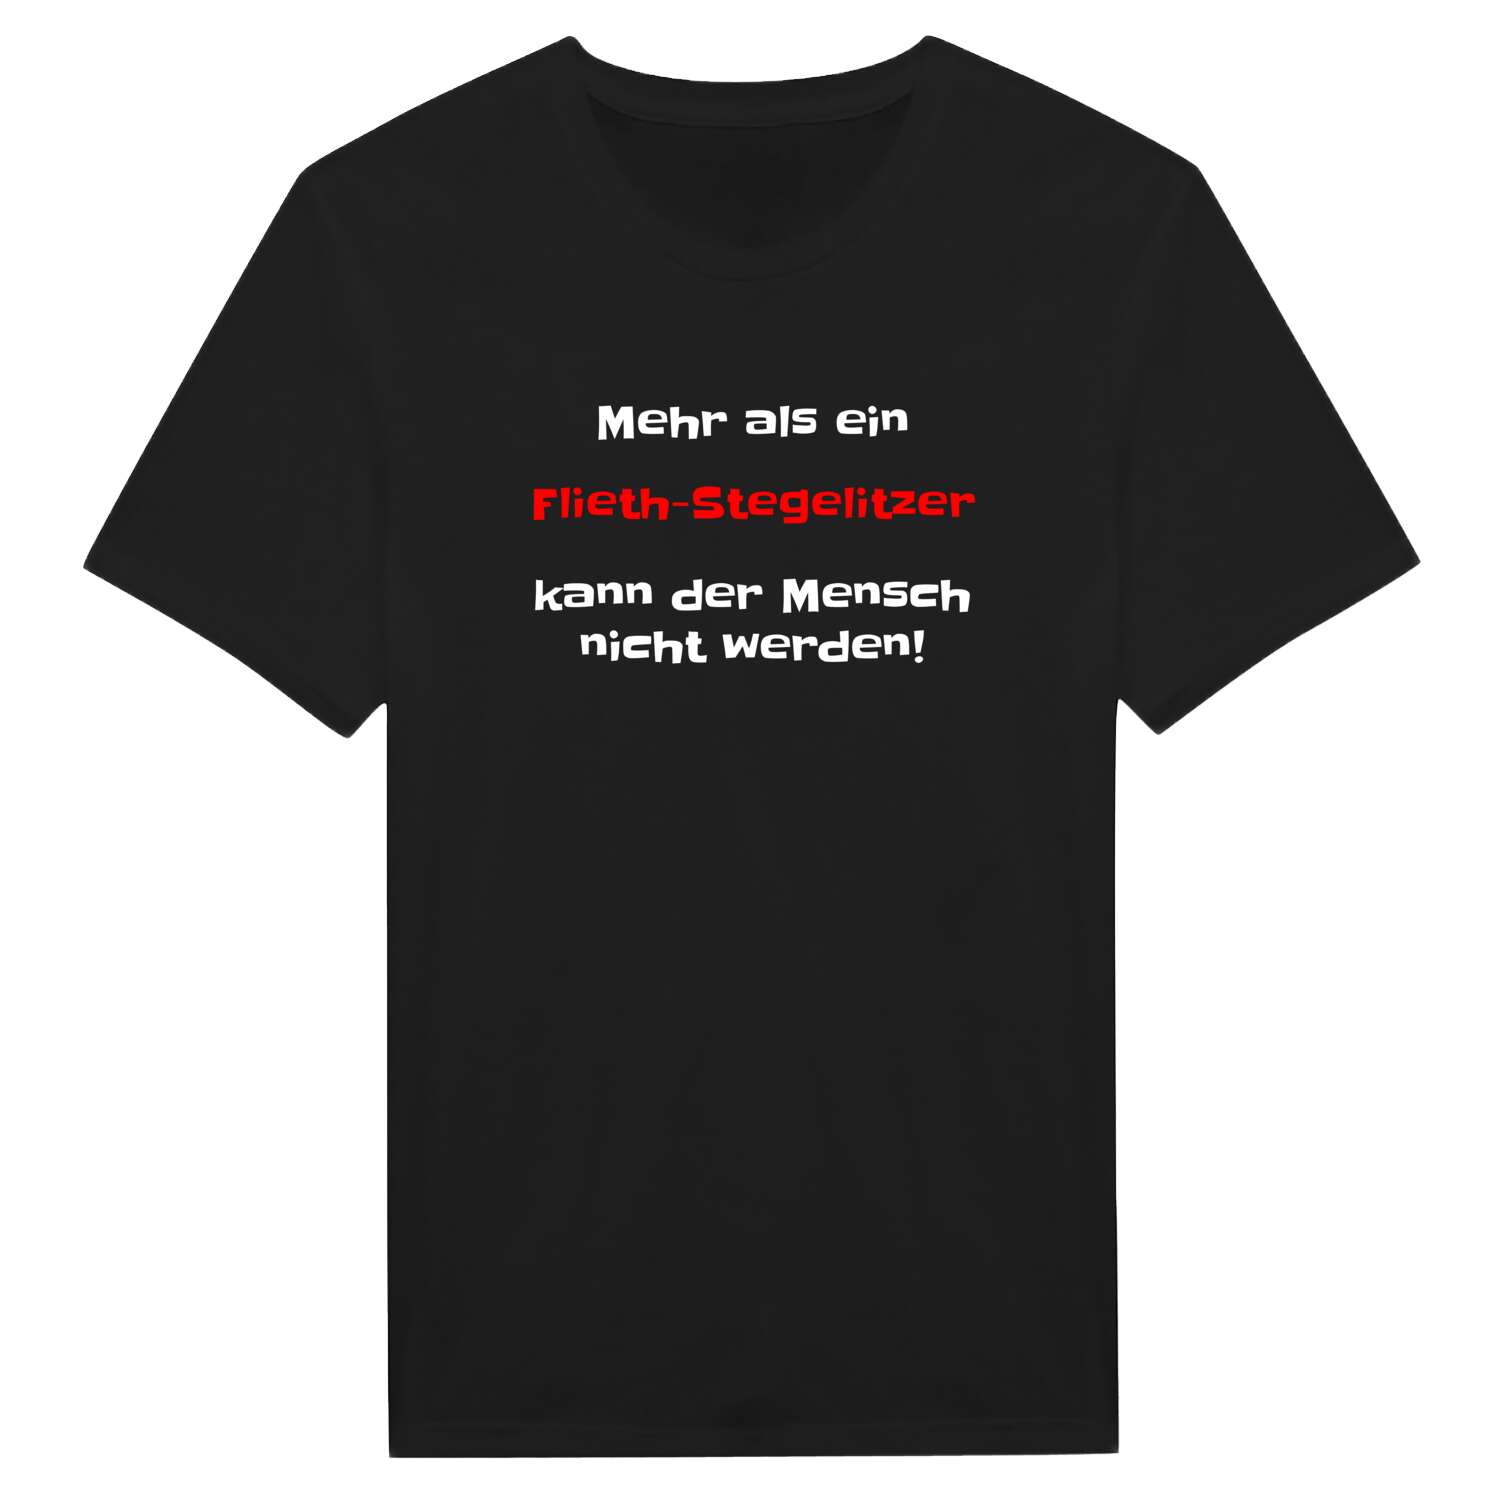 Flieth-Stegelitz T-Shirt »Mehr als ein«